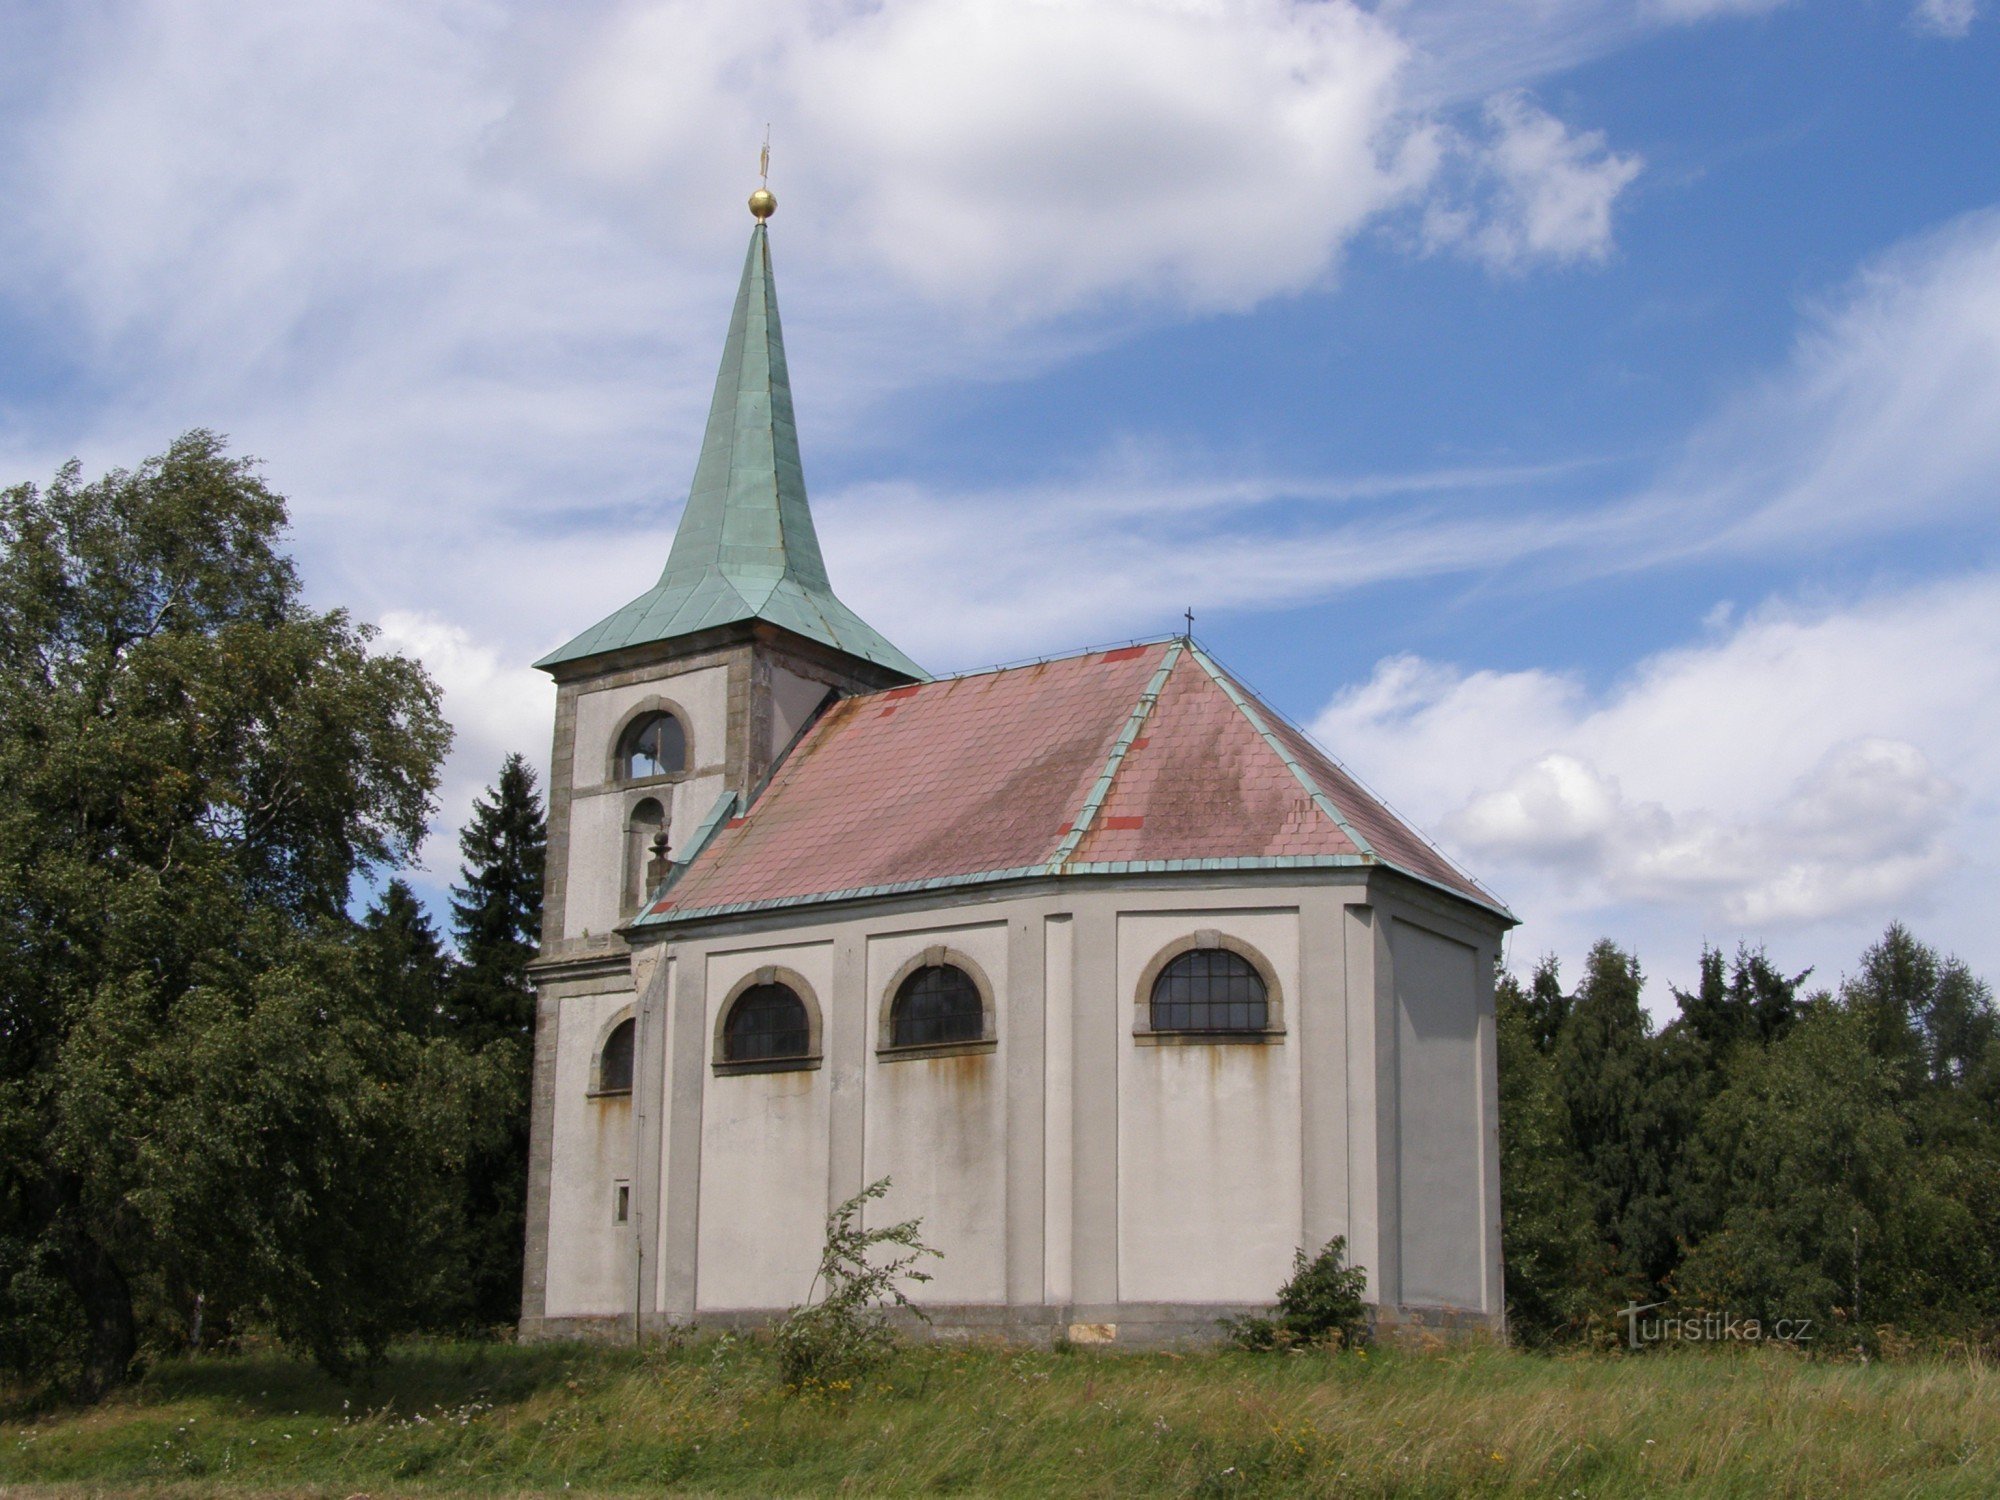 ズヴィチナ - 聖教会ヤン・ネポムキー